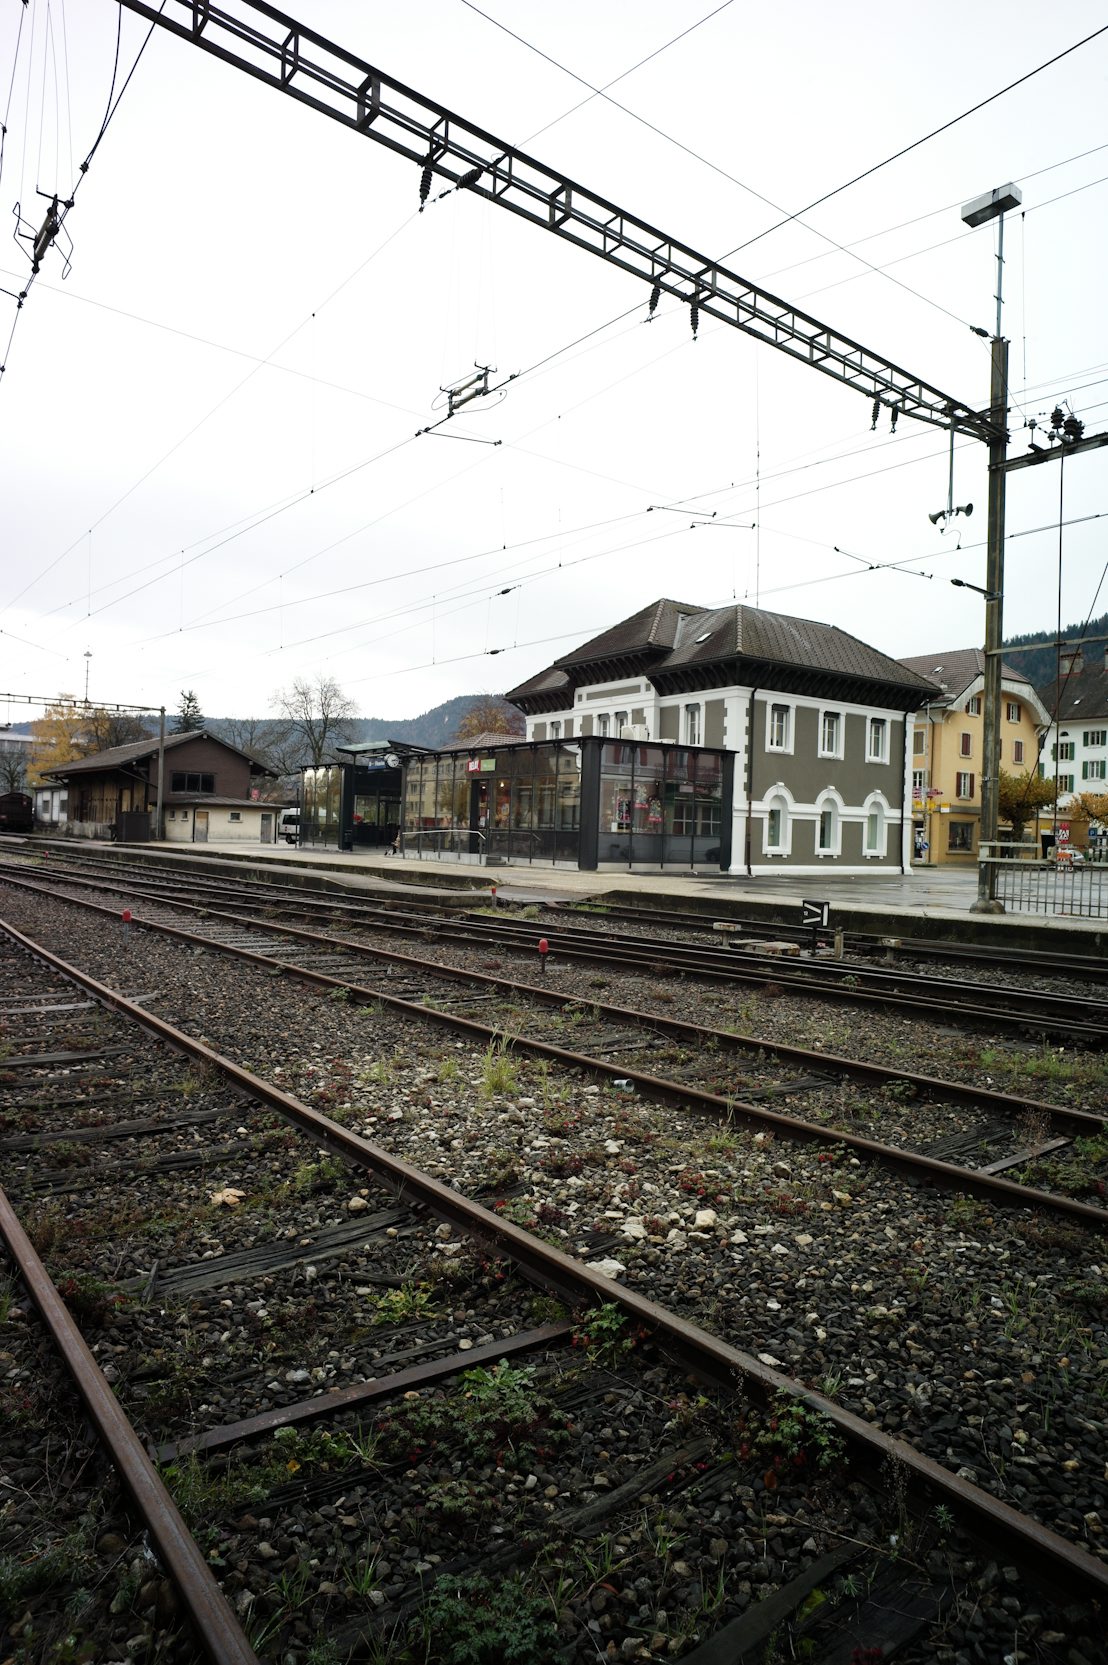 La gare de Fleurier entierement renovee

Fleurier, le 5 novembre 2011
Photo: Christian Galley